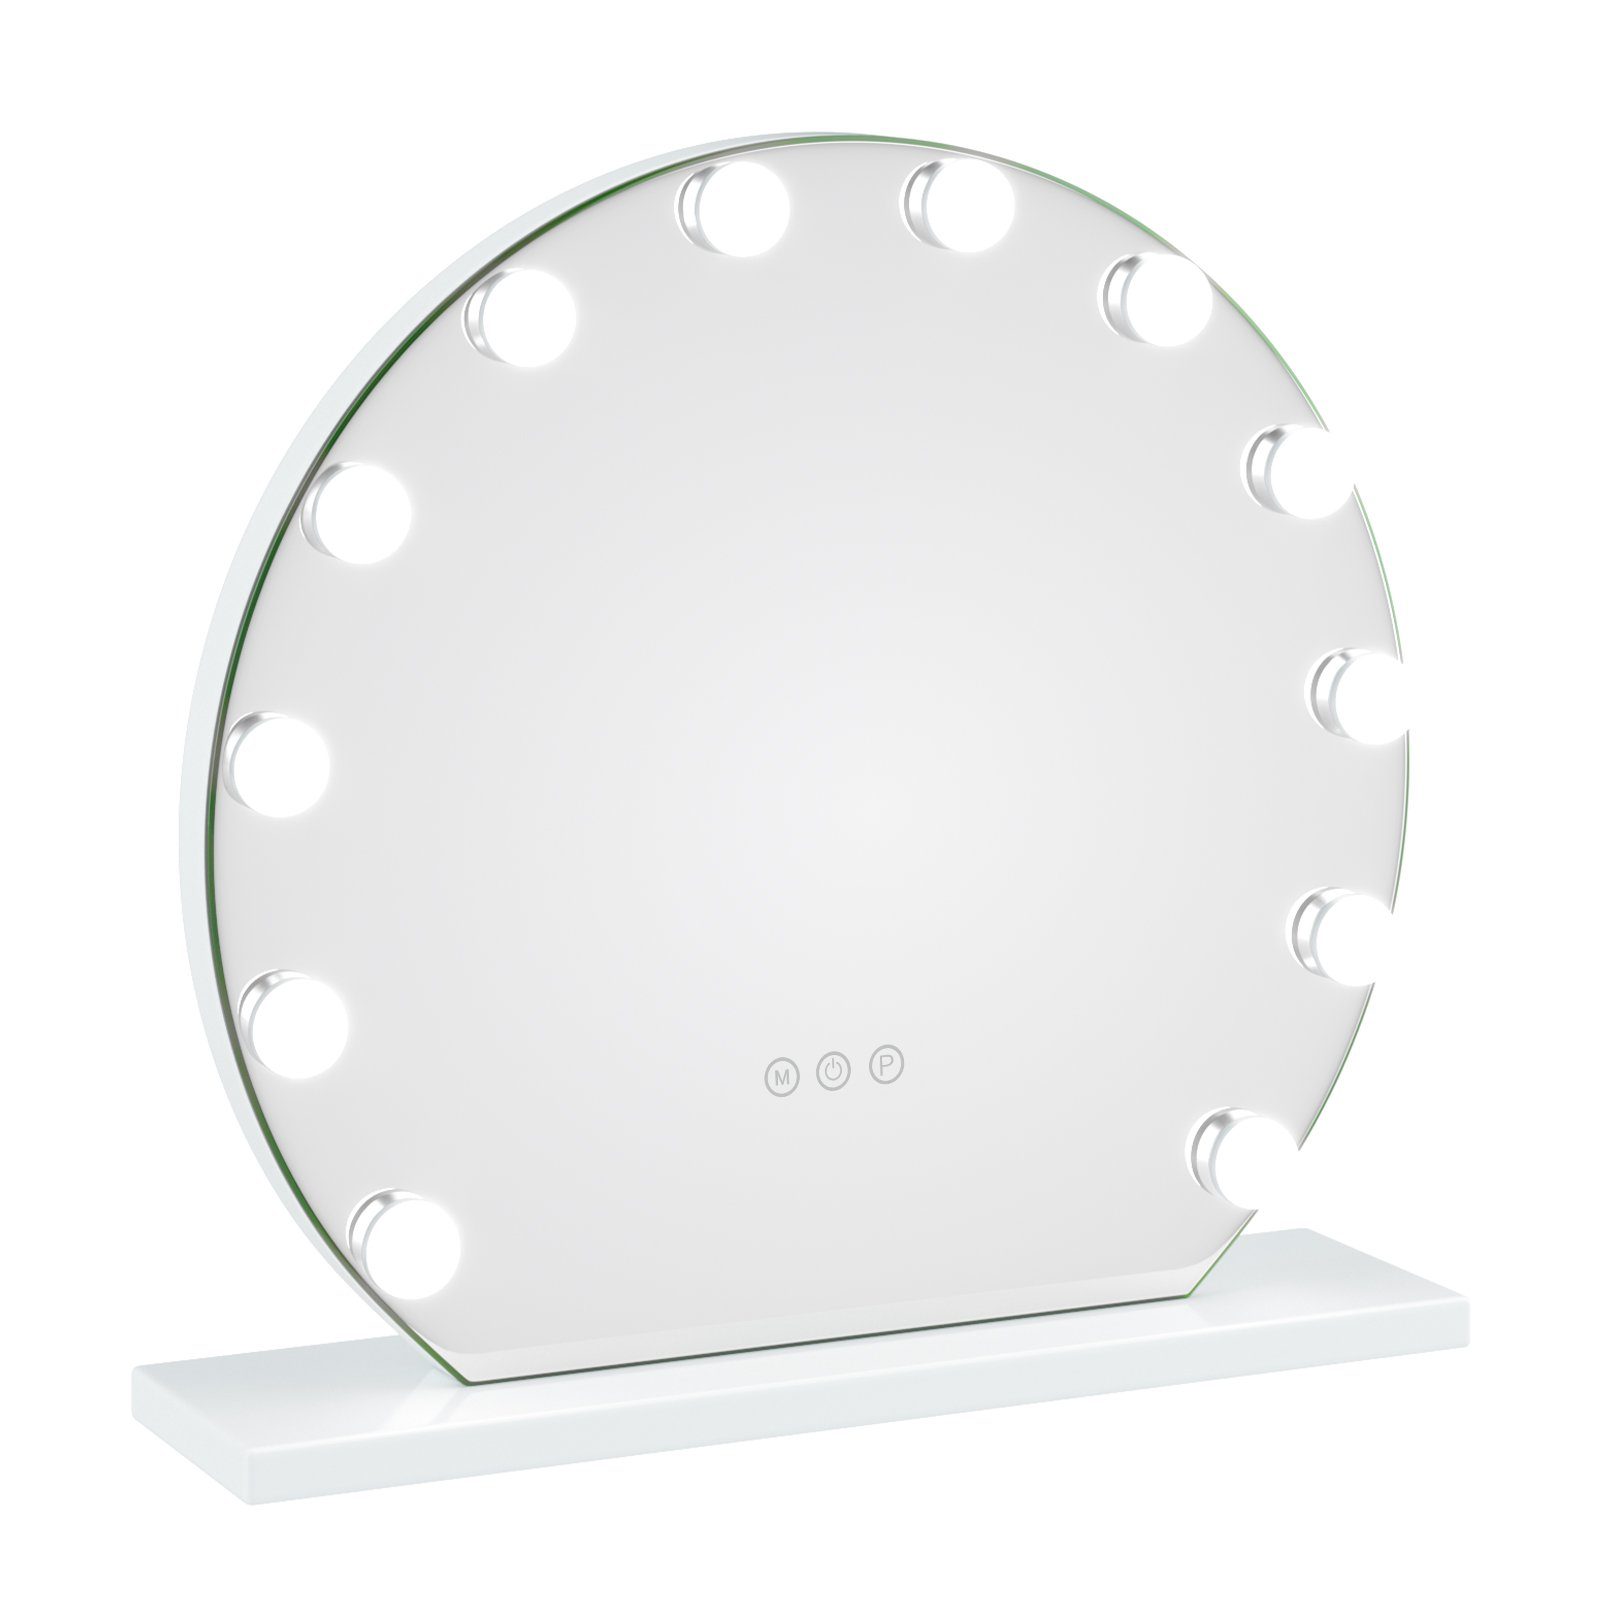 HOMECHO Schminkspiegel, Hollywood Spiegel Makeup Spiegel mit Beleuchtung 10  Dimmbare LED Lampen Farbtemperatur